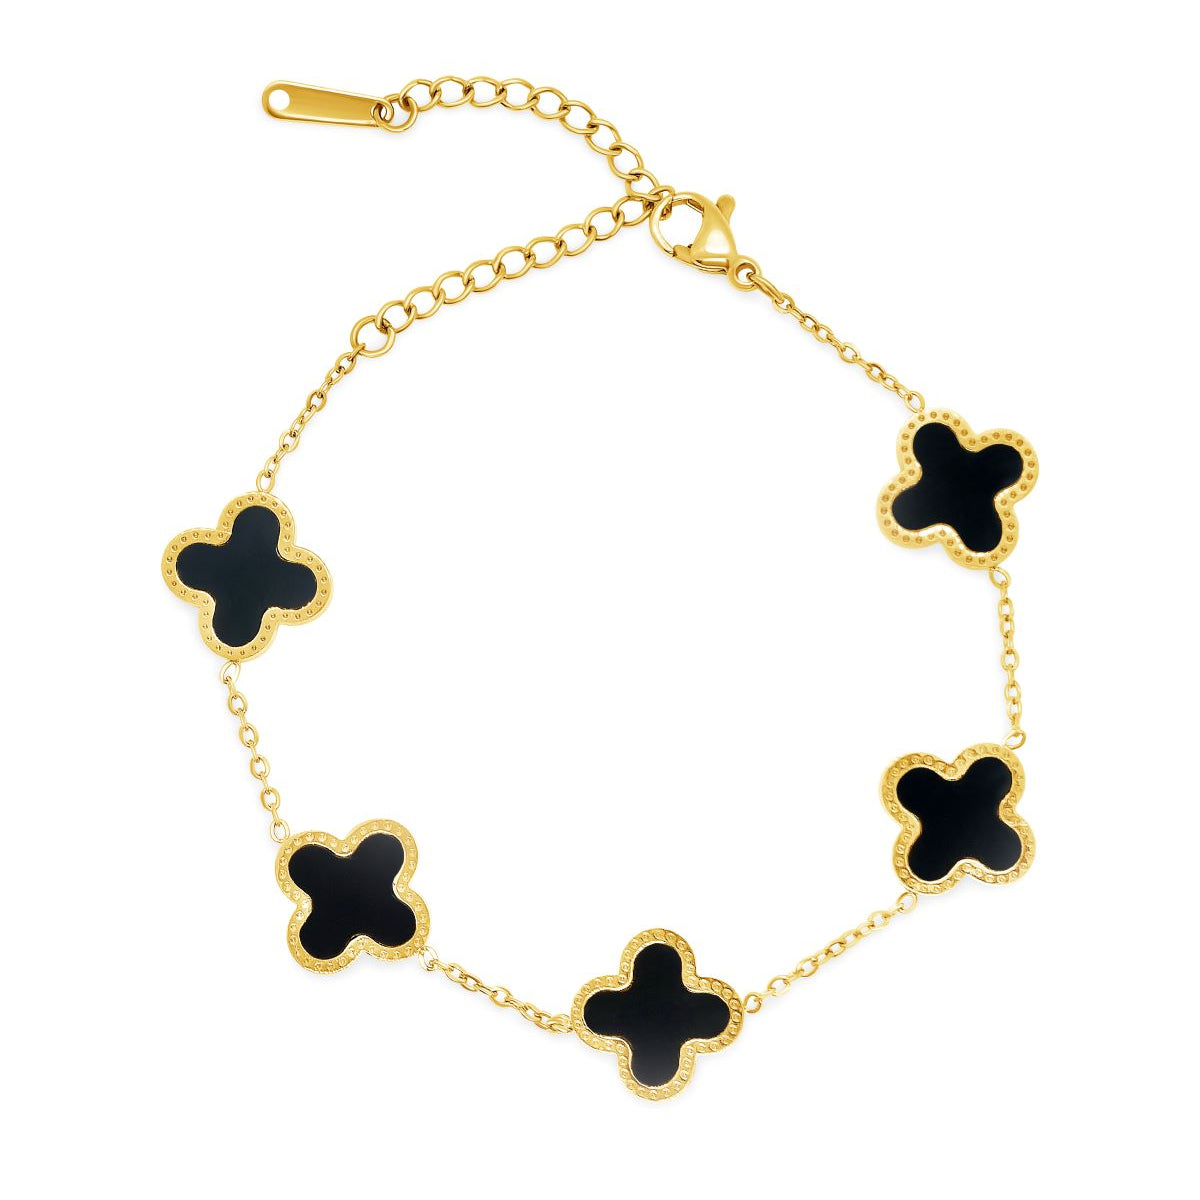 18K Gold Bracelet with Four-leaf Clover